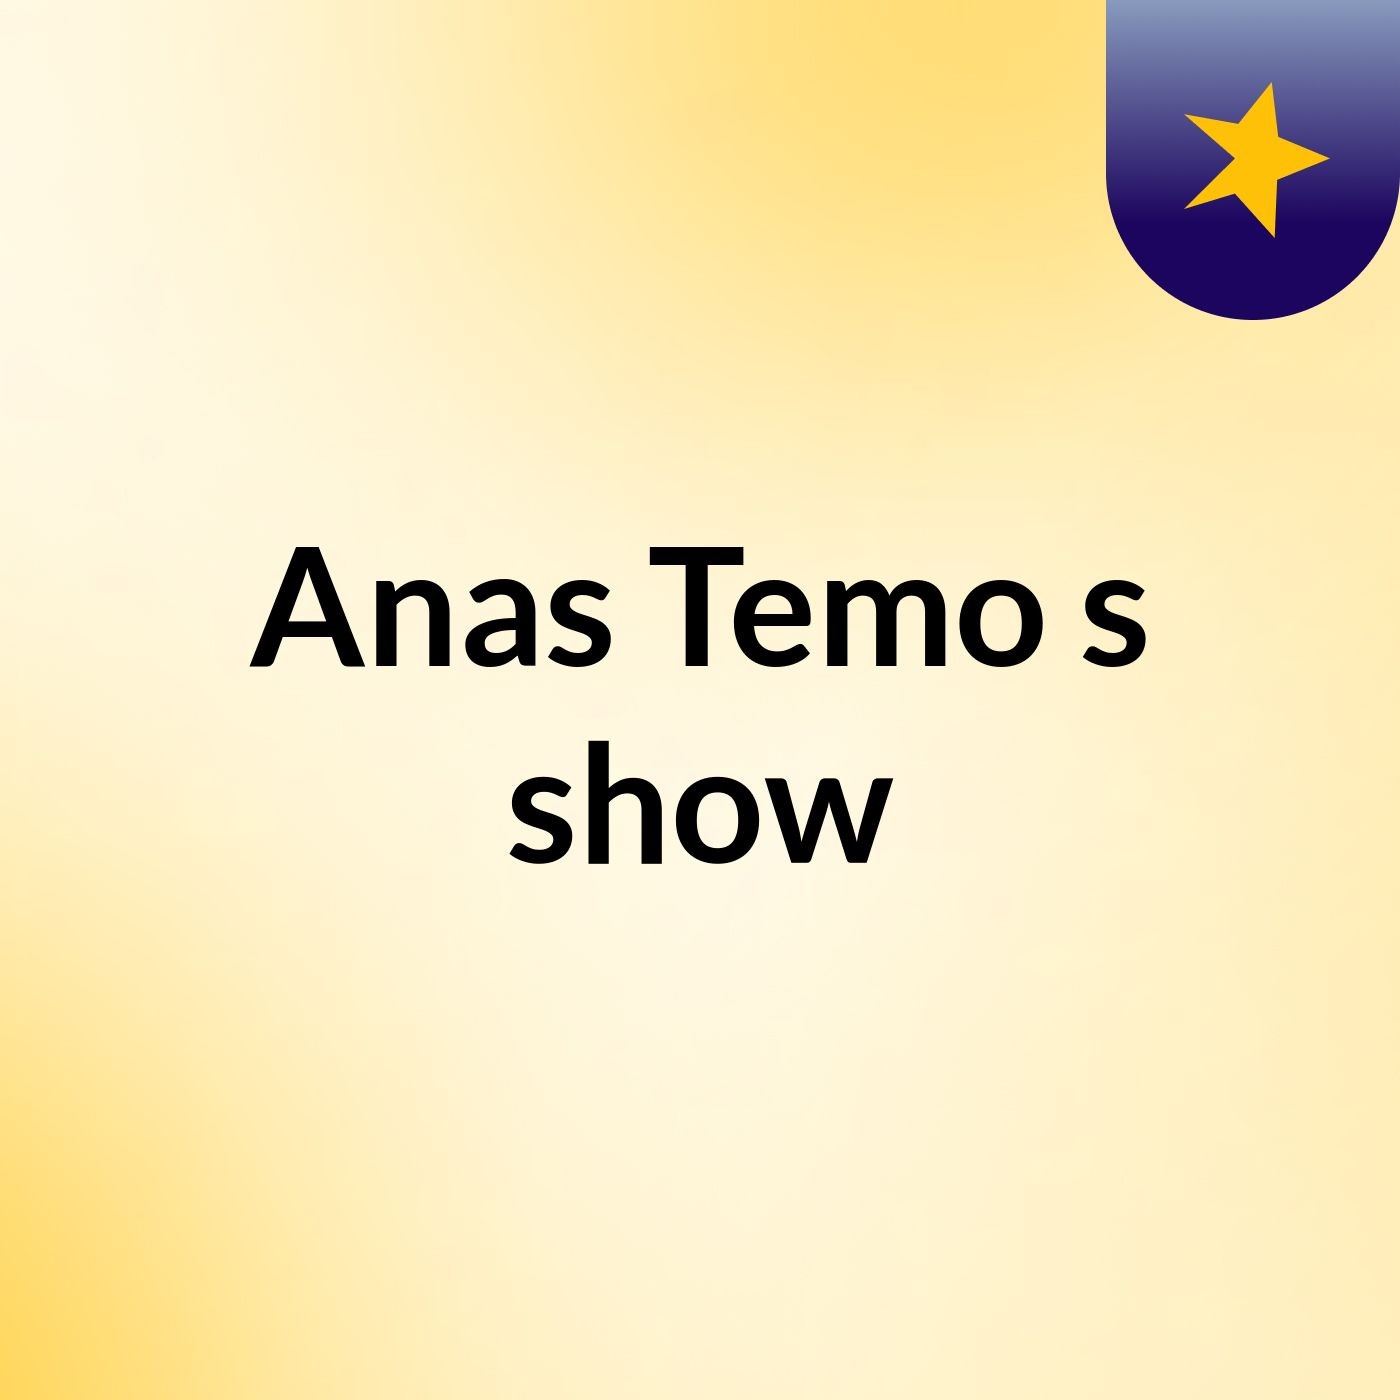 Anas Temo's show